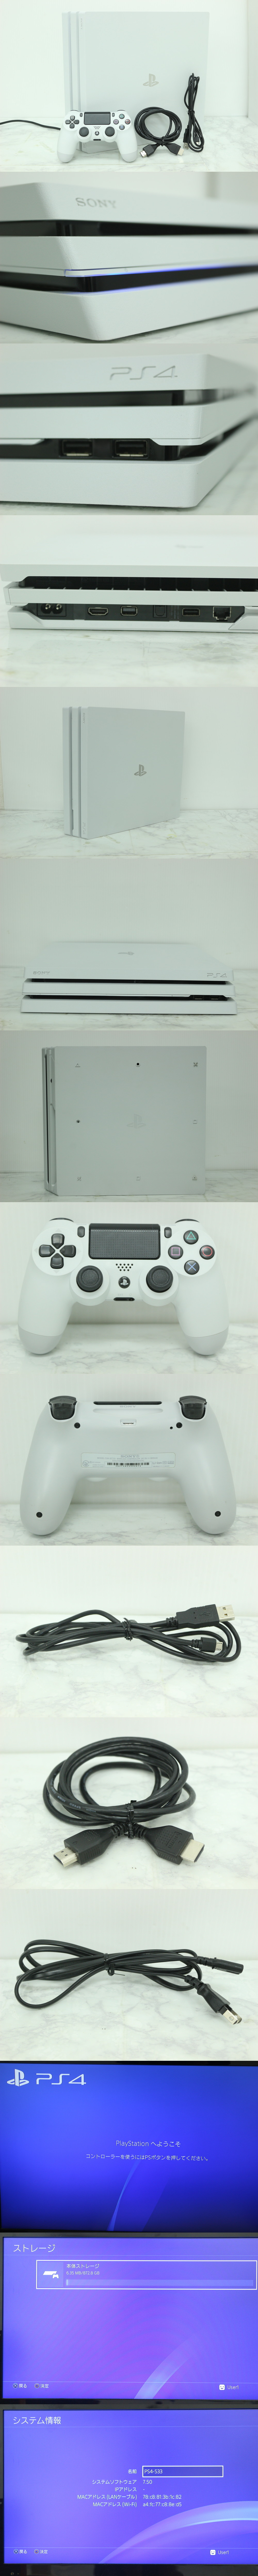 最新品得価SONY PlayStation4 Pro グレイシャー・ホワイト 1TB CUH-7200B ps4 pro PS4本体